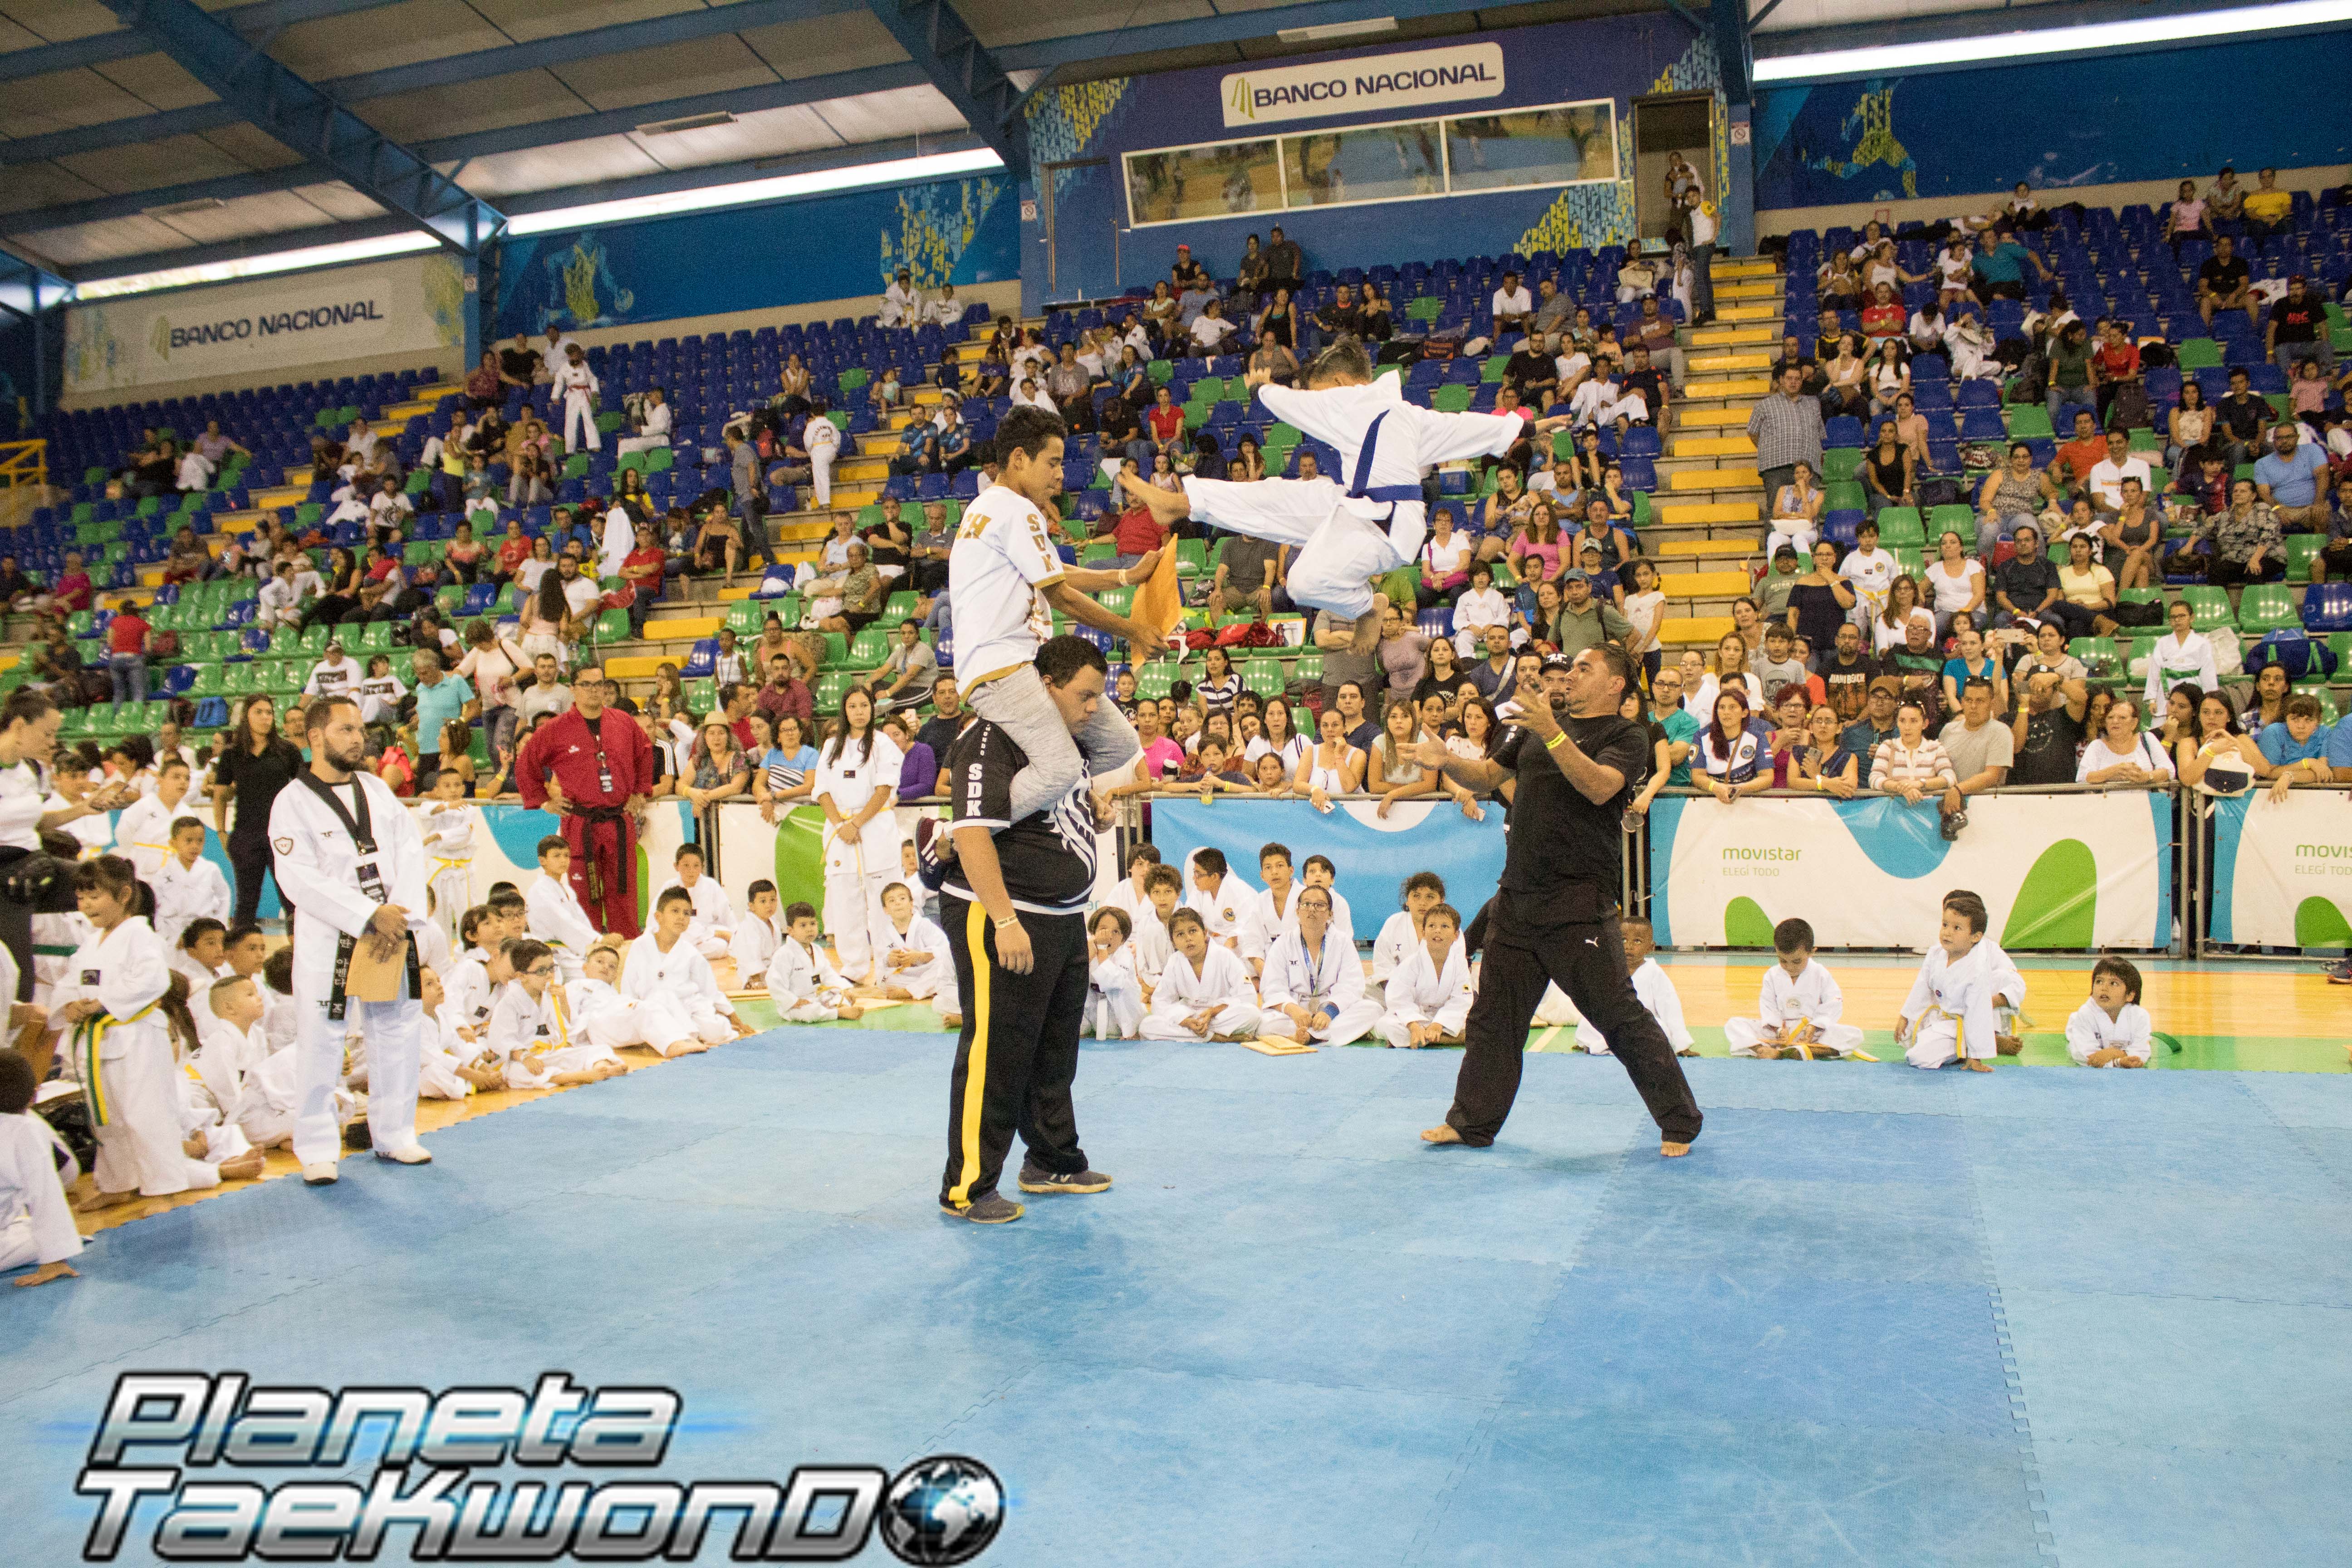 ¿Qué hace este domingo? Vea la competencia élite del Festival de Taekwondo